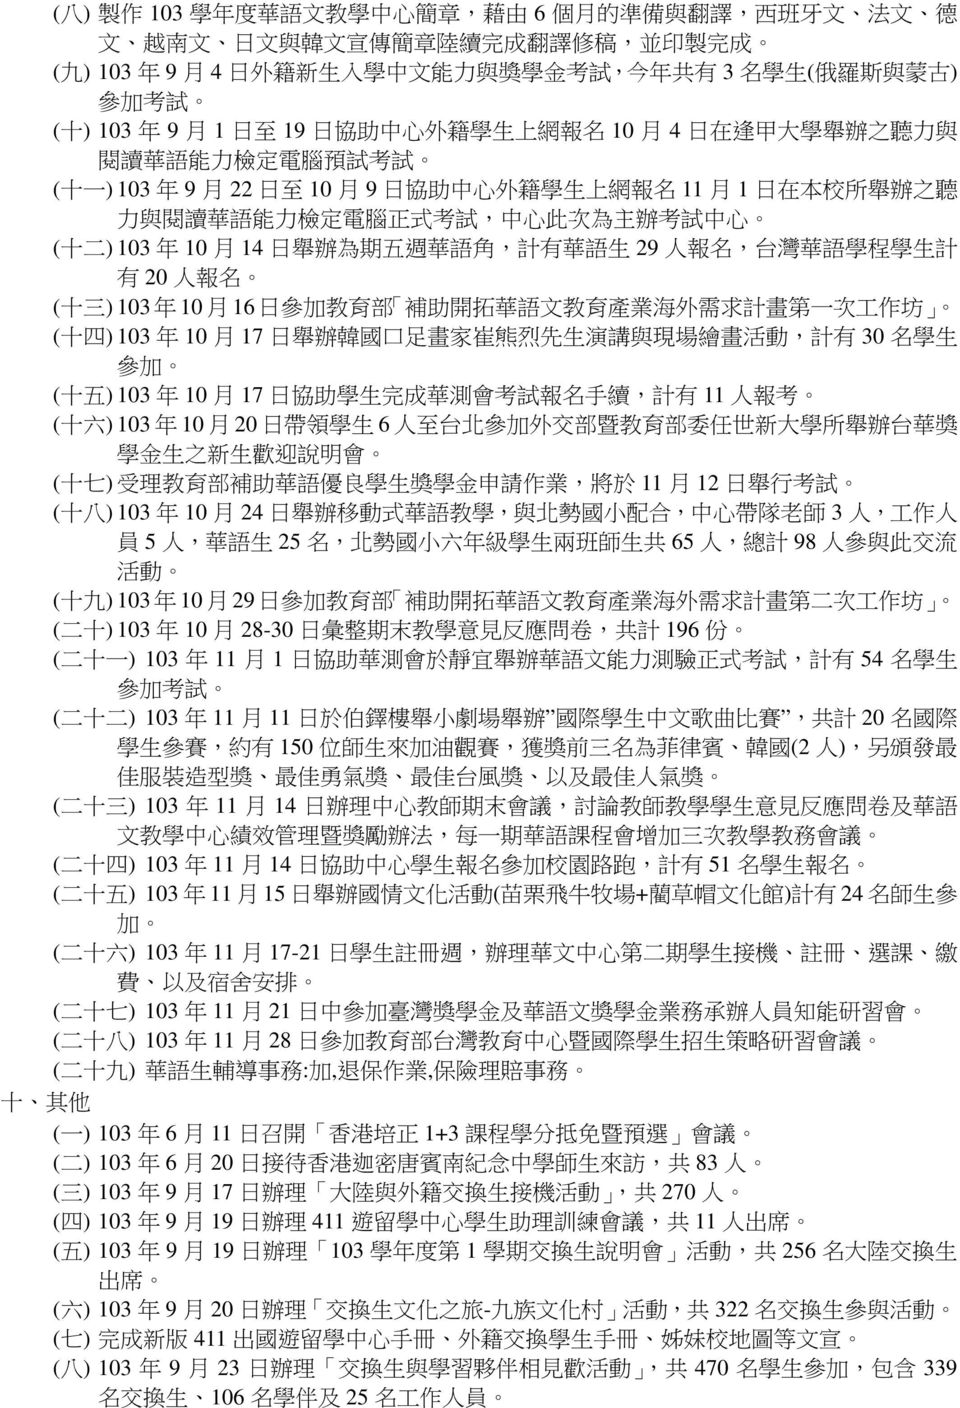 在 本 校 所 舉 辦 之 聽 力 與 閱 讀 華 語 能 力 檢 定 電 腦 正 式 考 試, 中 心 此 次 為 主 辦 考 試 中 心 ( 十 二 ) 103 年 10 月 14 日 舉 辦 為 期 五 週 華 語 角, 計 有 華 語 生 29 人 報 名, 台 灣 華 語 學 程 學 生 計 有 20 人 報 名 ( 十 三 ) 103 年 10 月 16 日 參 加 教 育 部 補